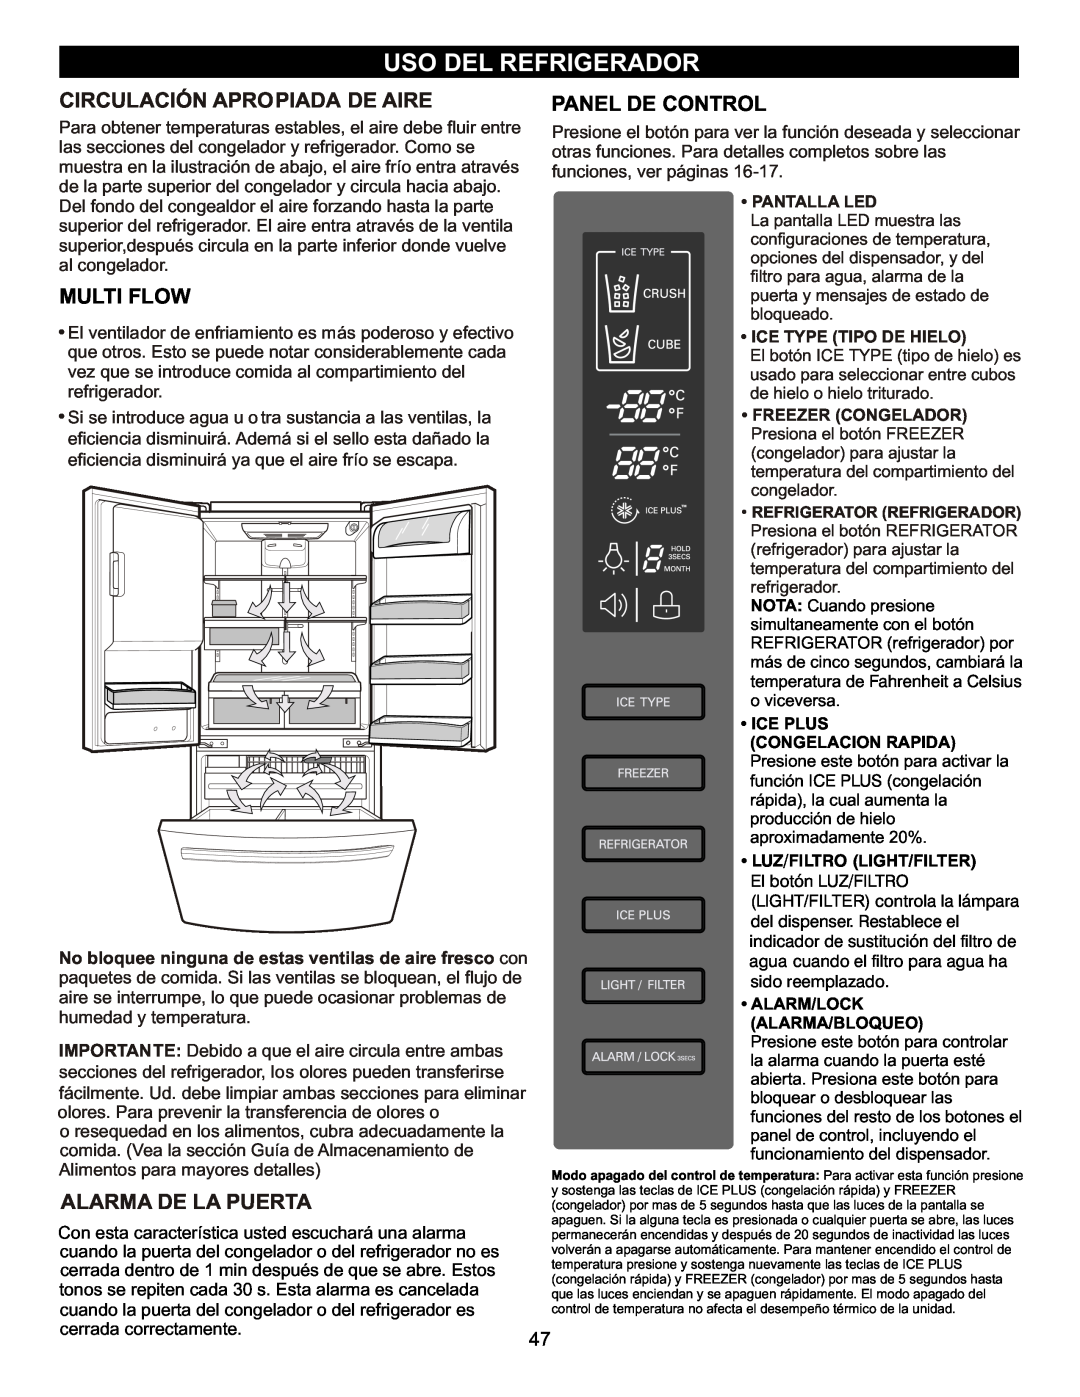 LG Electronics LFX23961SB owner manual Uso Del Refrigerador, Circulación Apropiada De Aire, Multi Flow, Alarma De La Puerta 